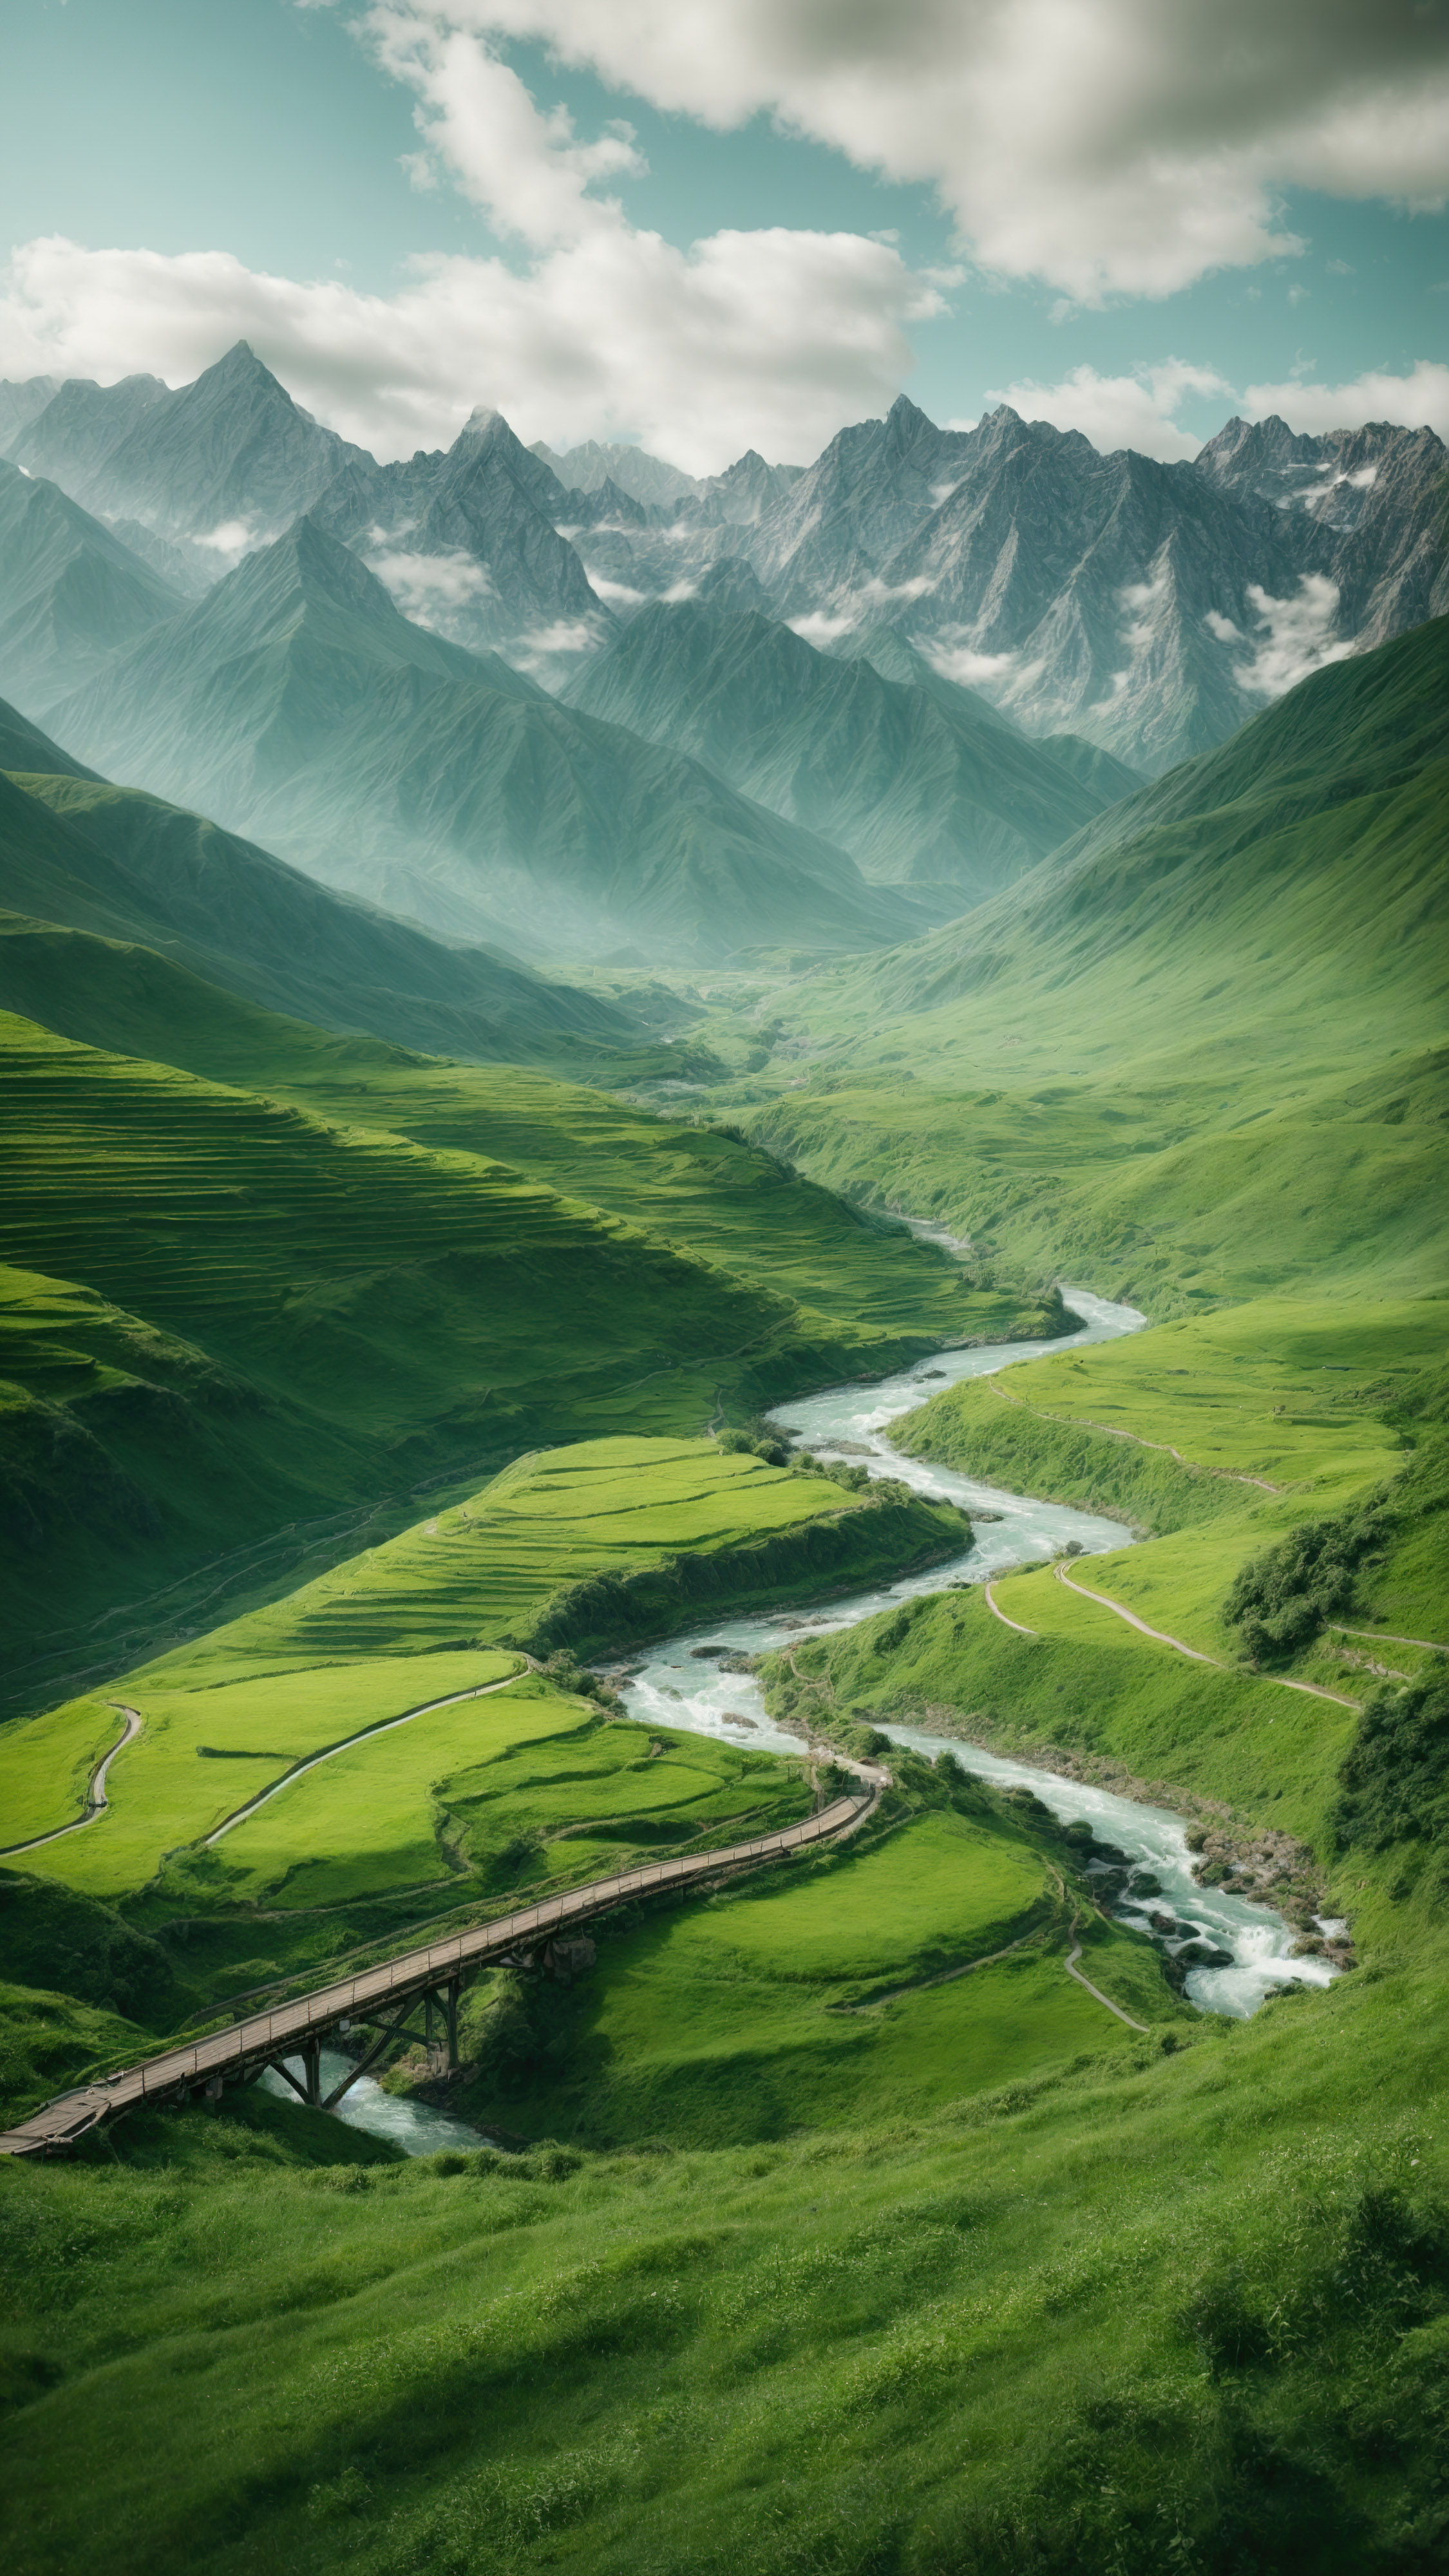 Savourez la tranquillité d'une vallée verte entourée de montagnes majestueuses, avec une rivière sinueuse et un pont en bois, avec notre fond d'écran de chaîne de montagnes pour iPhone.